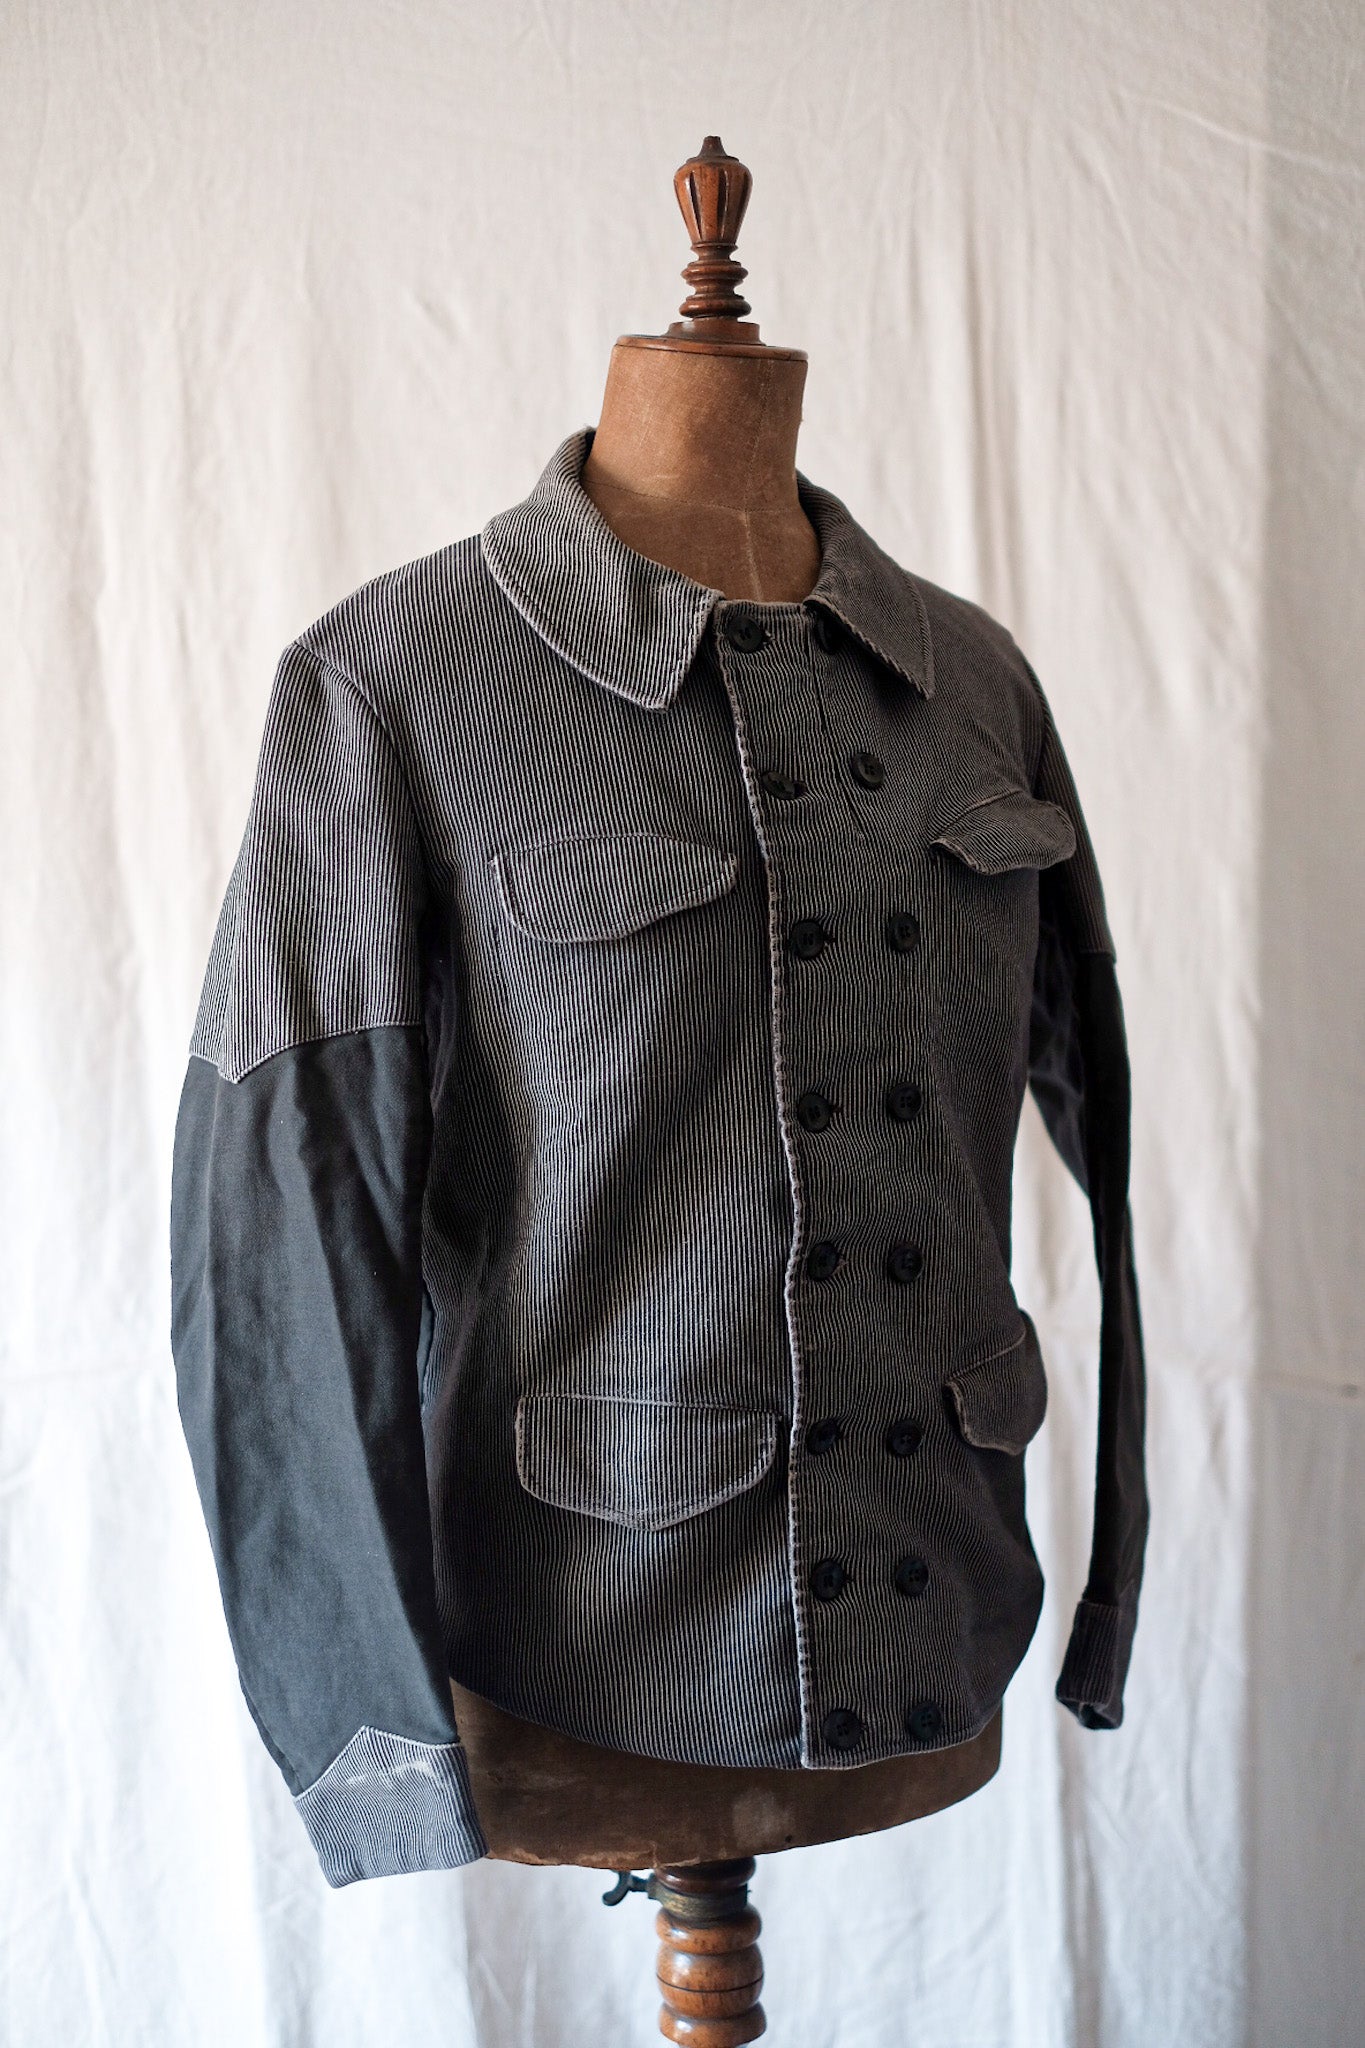 [~ 50 년대] 벨기에 빈티지 인쇄 몰드 스킨 더블 가슴 작업 재킷